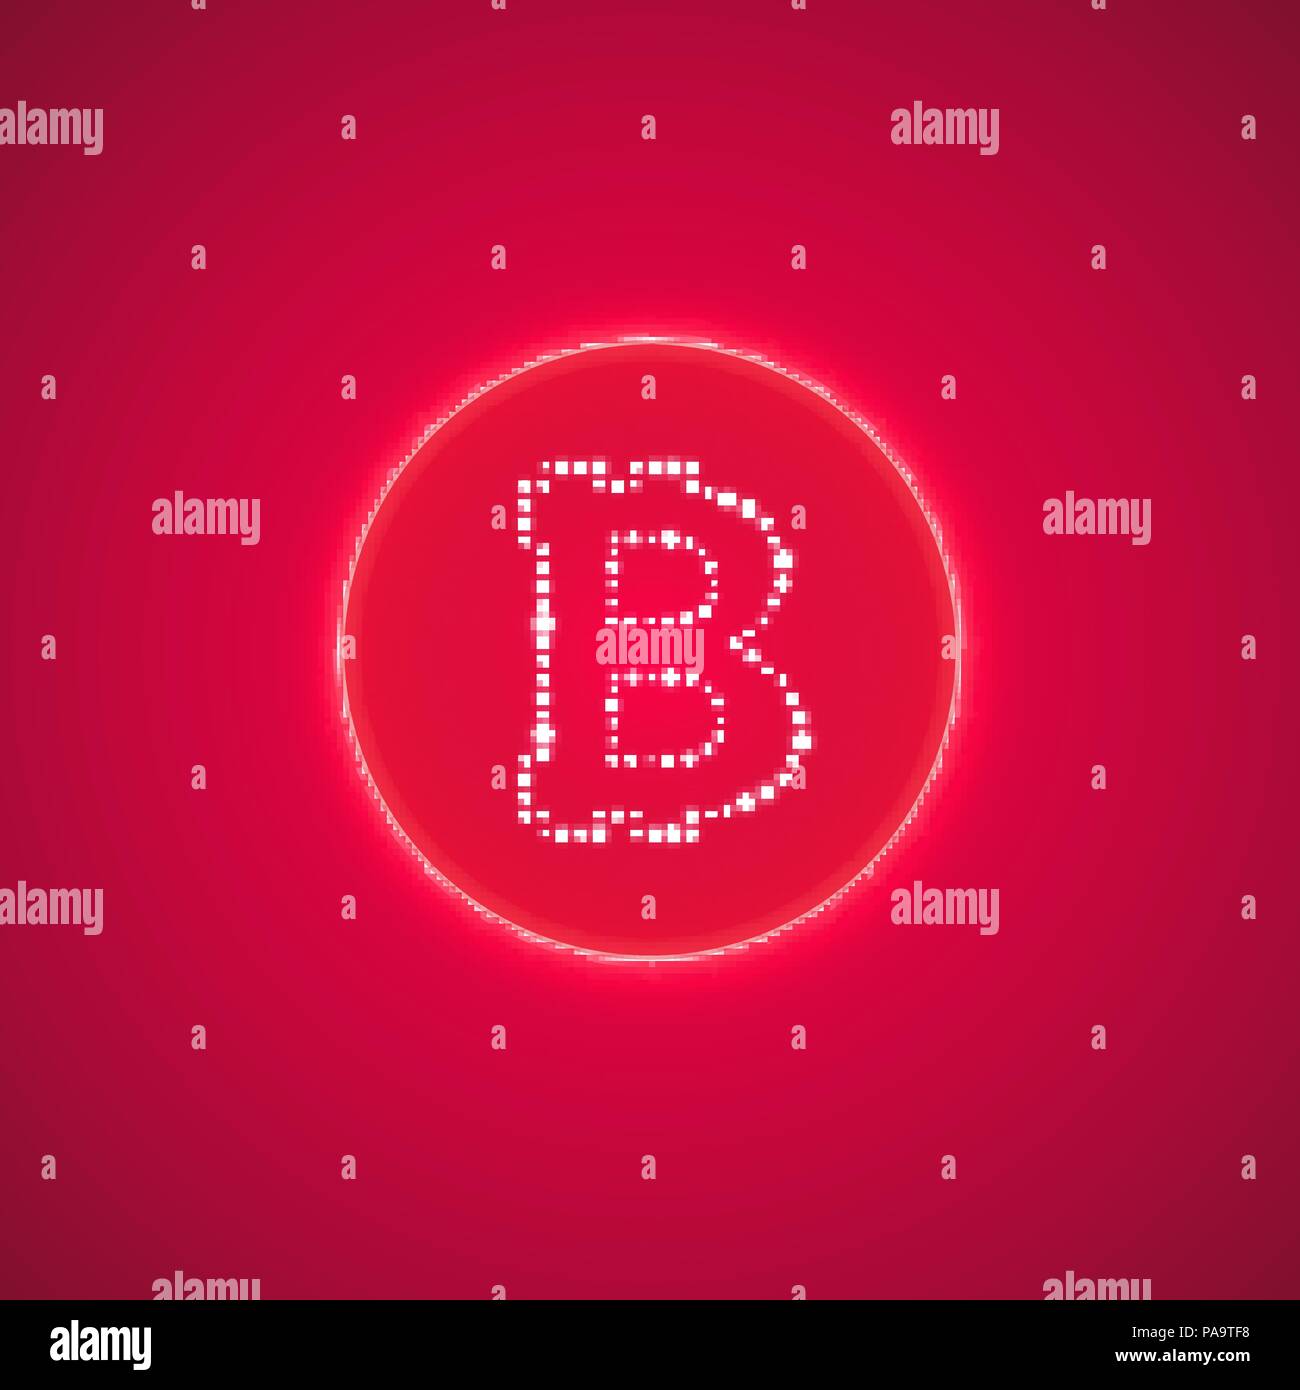 Abstract neon pink anello di energia con bitcoin su uno sfondo di colore rosa. Illustrazione Vettoriale